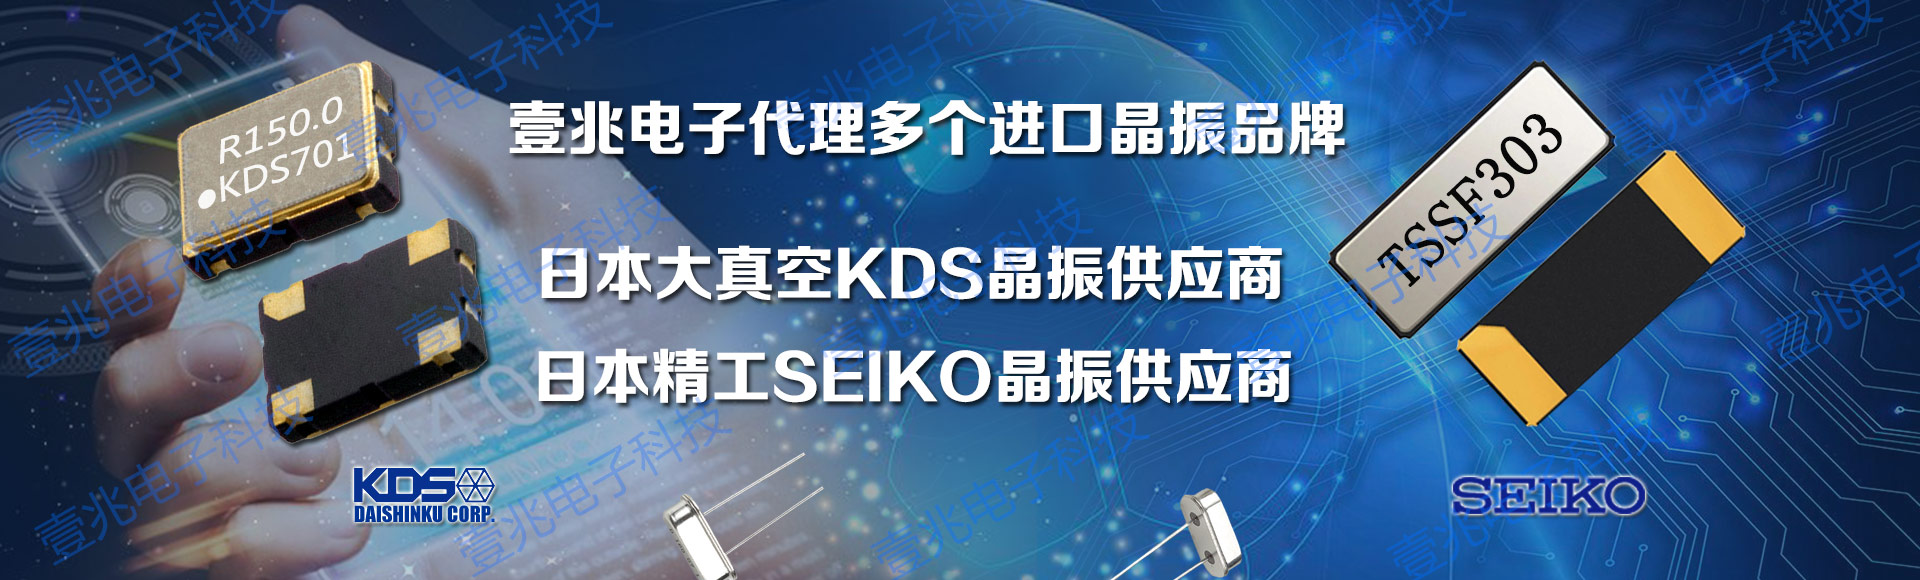 壹兆电子代理KDS晶振,精工晶振品牌,提供各种贴片晶振,具有小尺寸,高精度,高性能,低功耗等优势